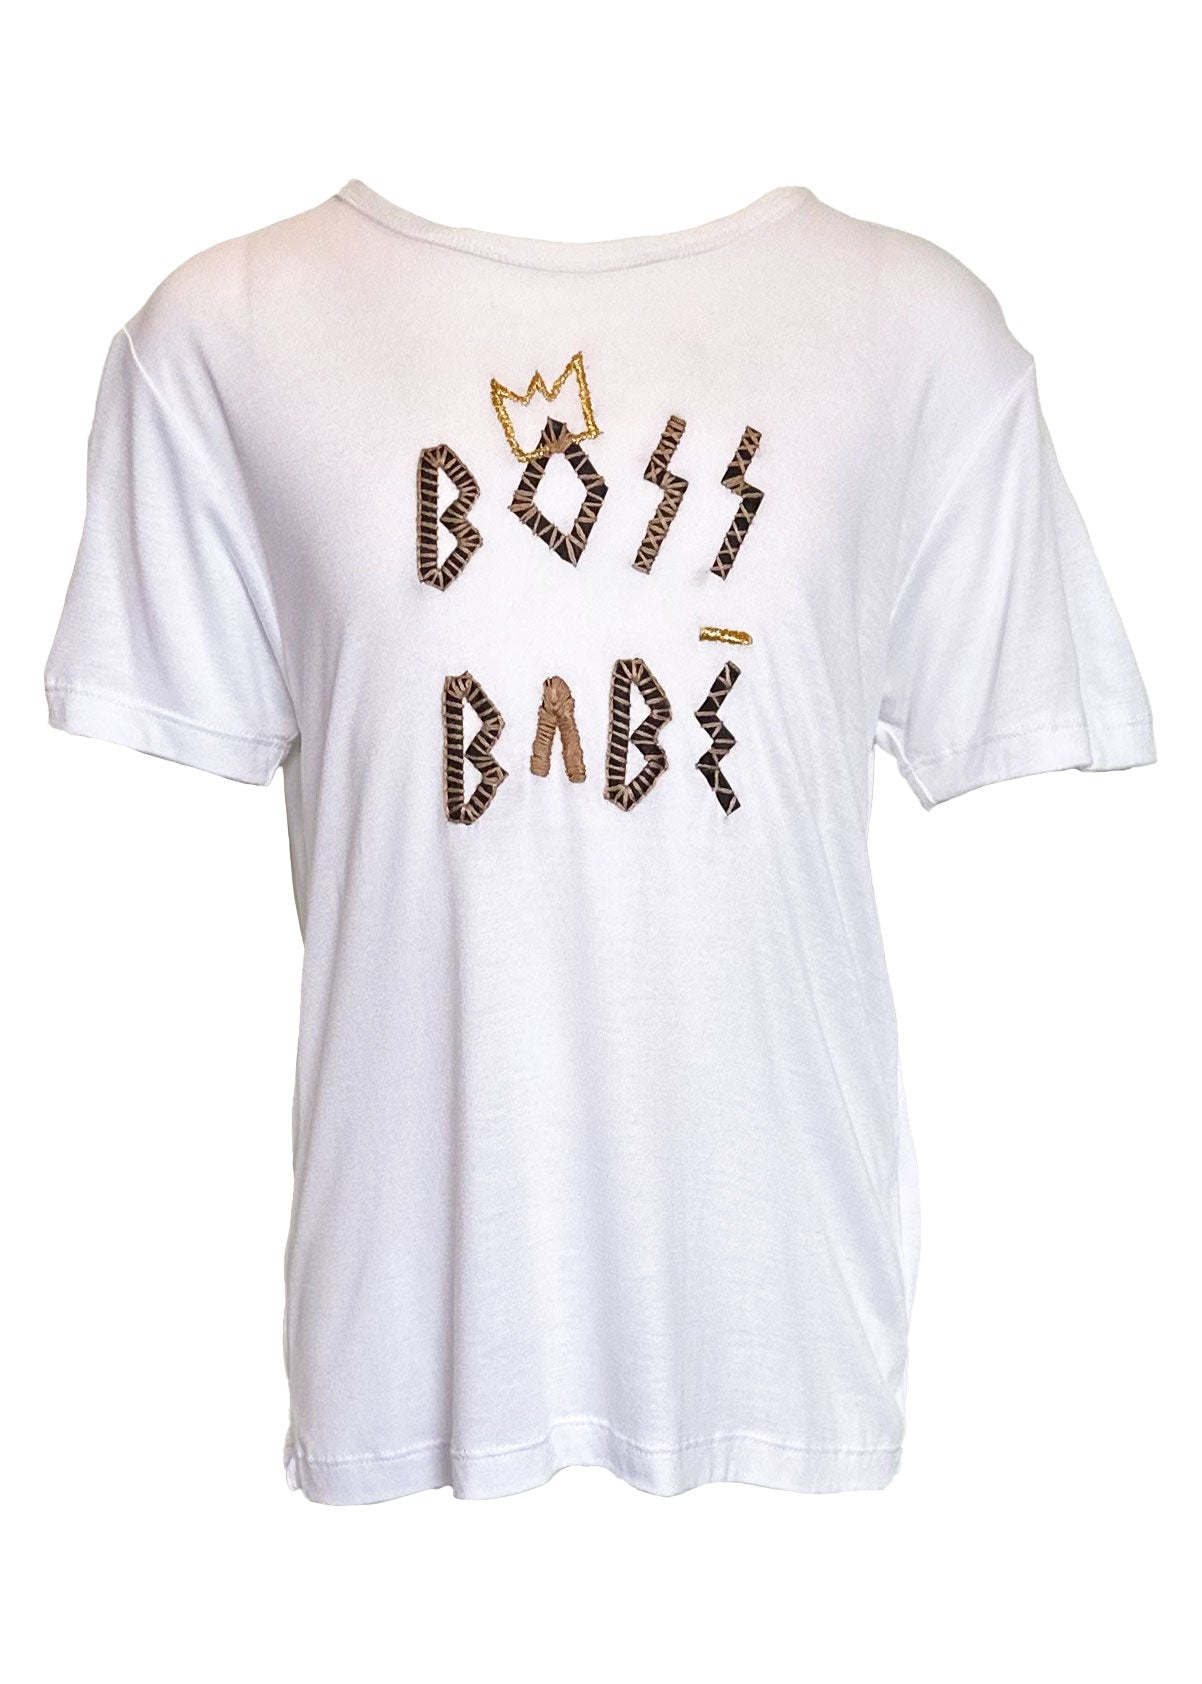 Boss Babe Kids Tee Shirt